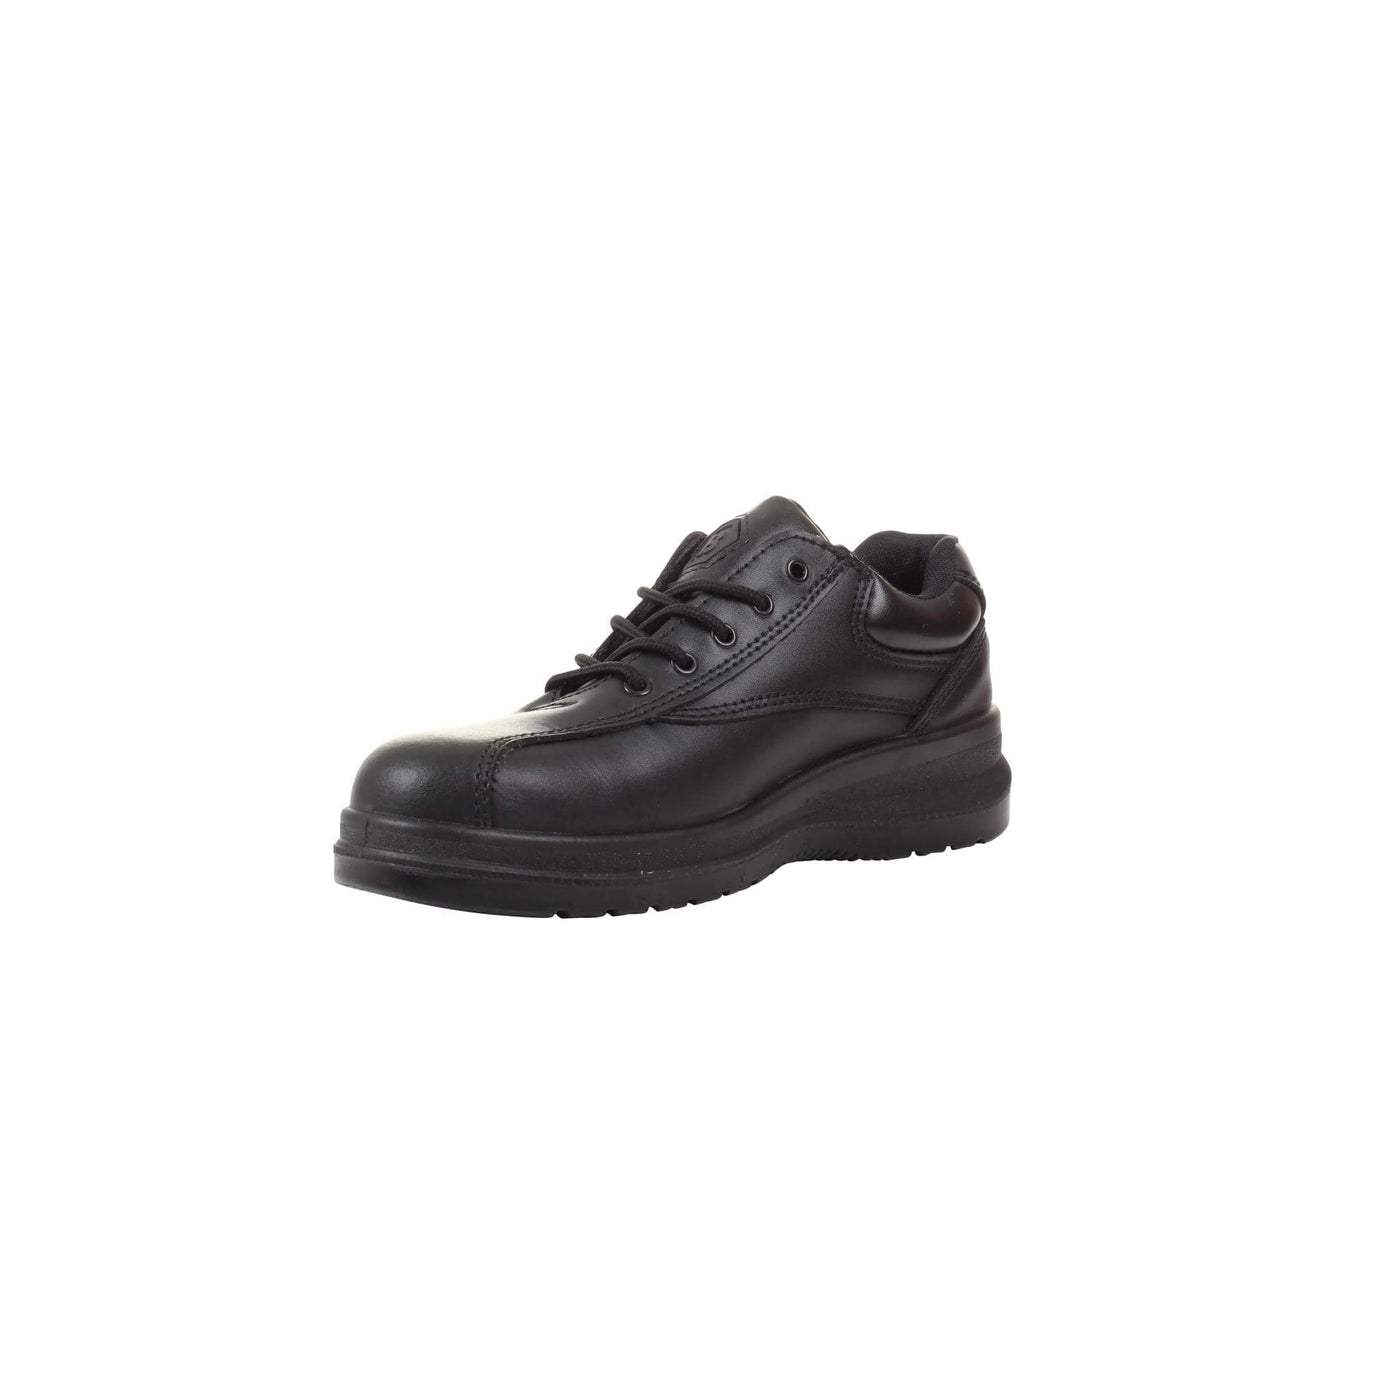 Blackrock Madison Ladies Safety Shoes Black 2#colour_black